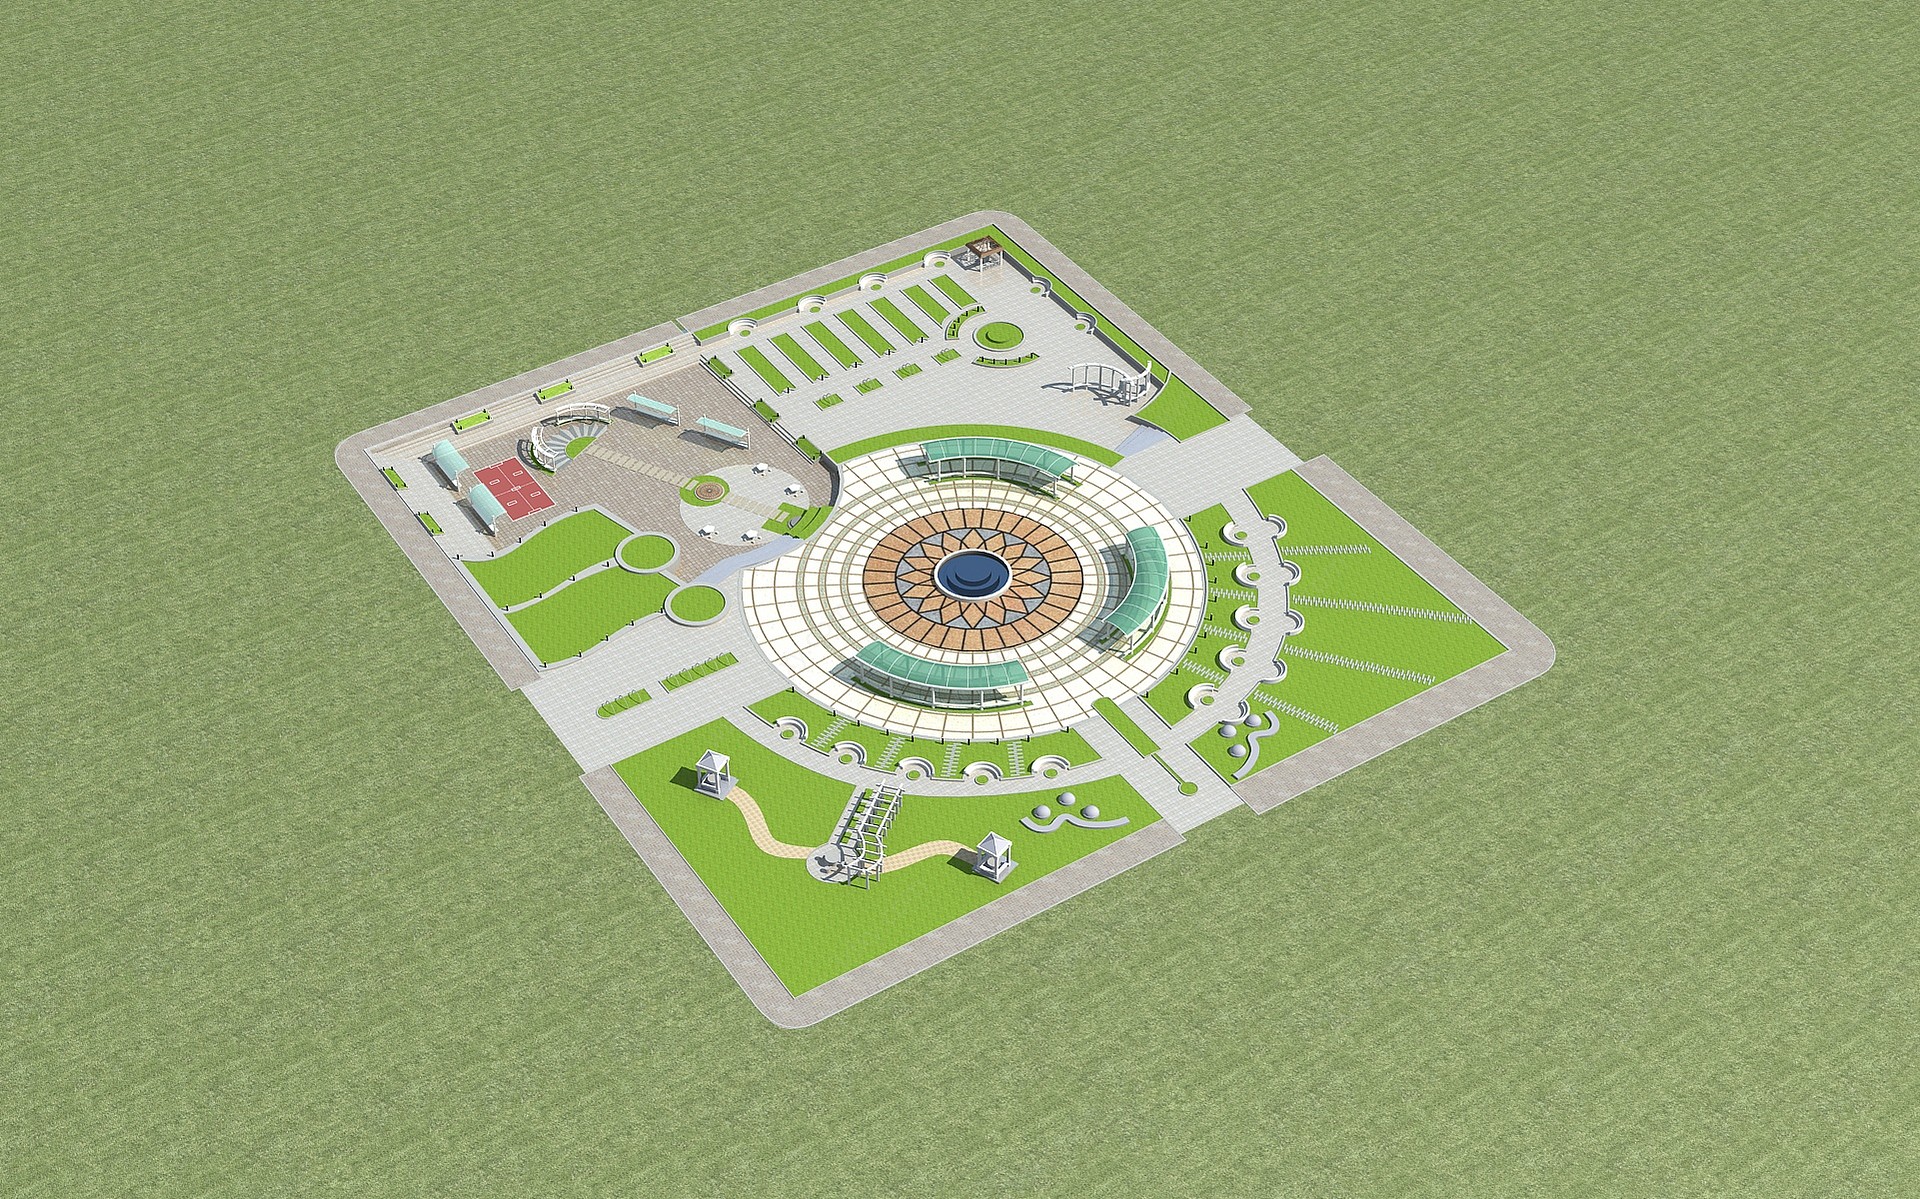 广场景观3D模型